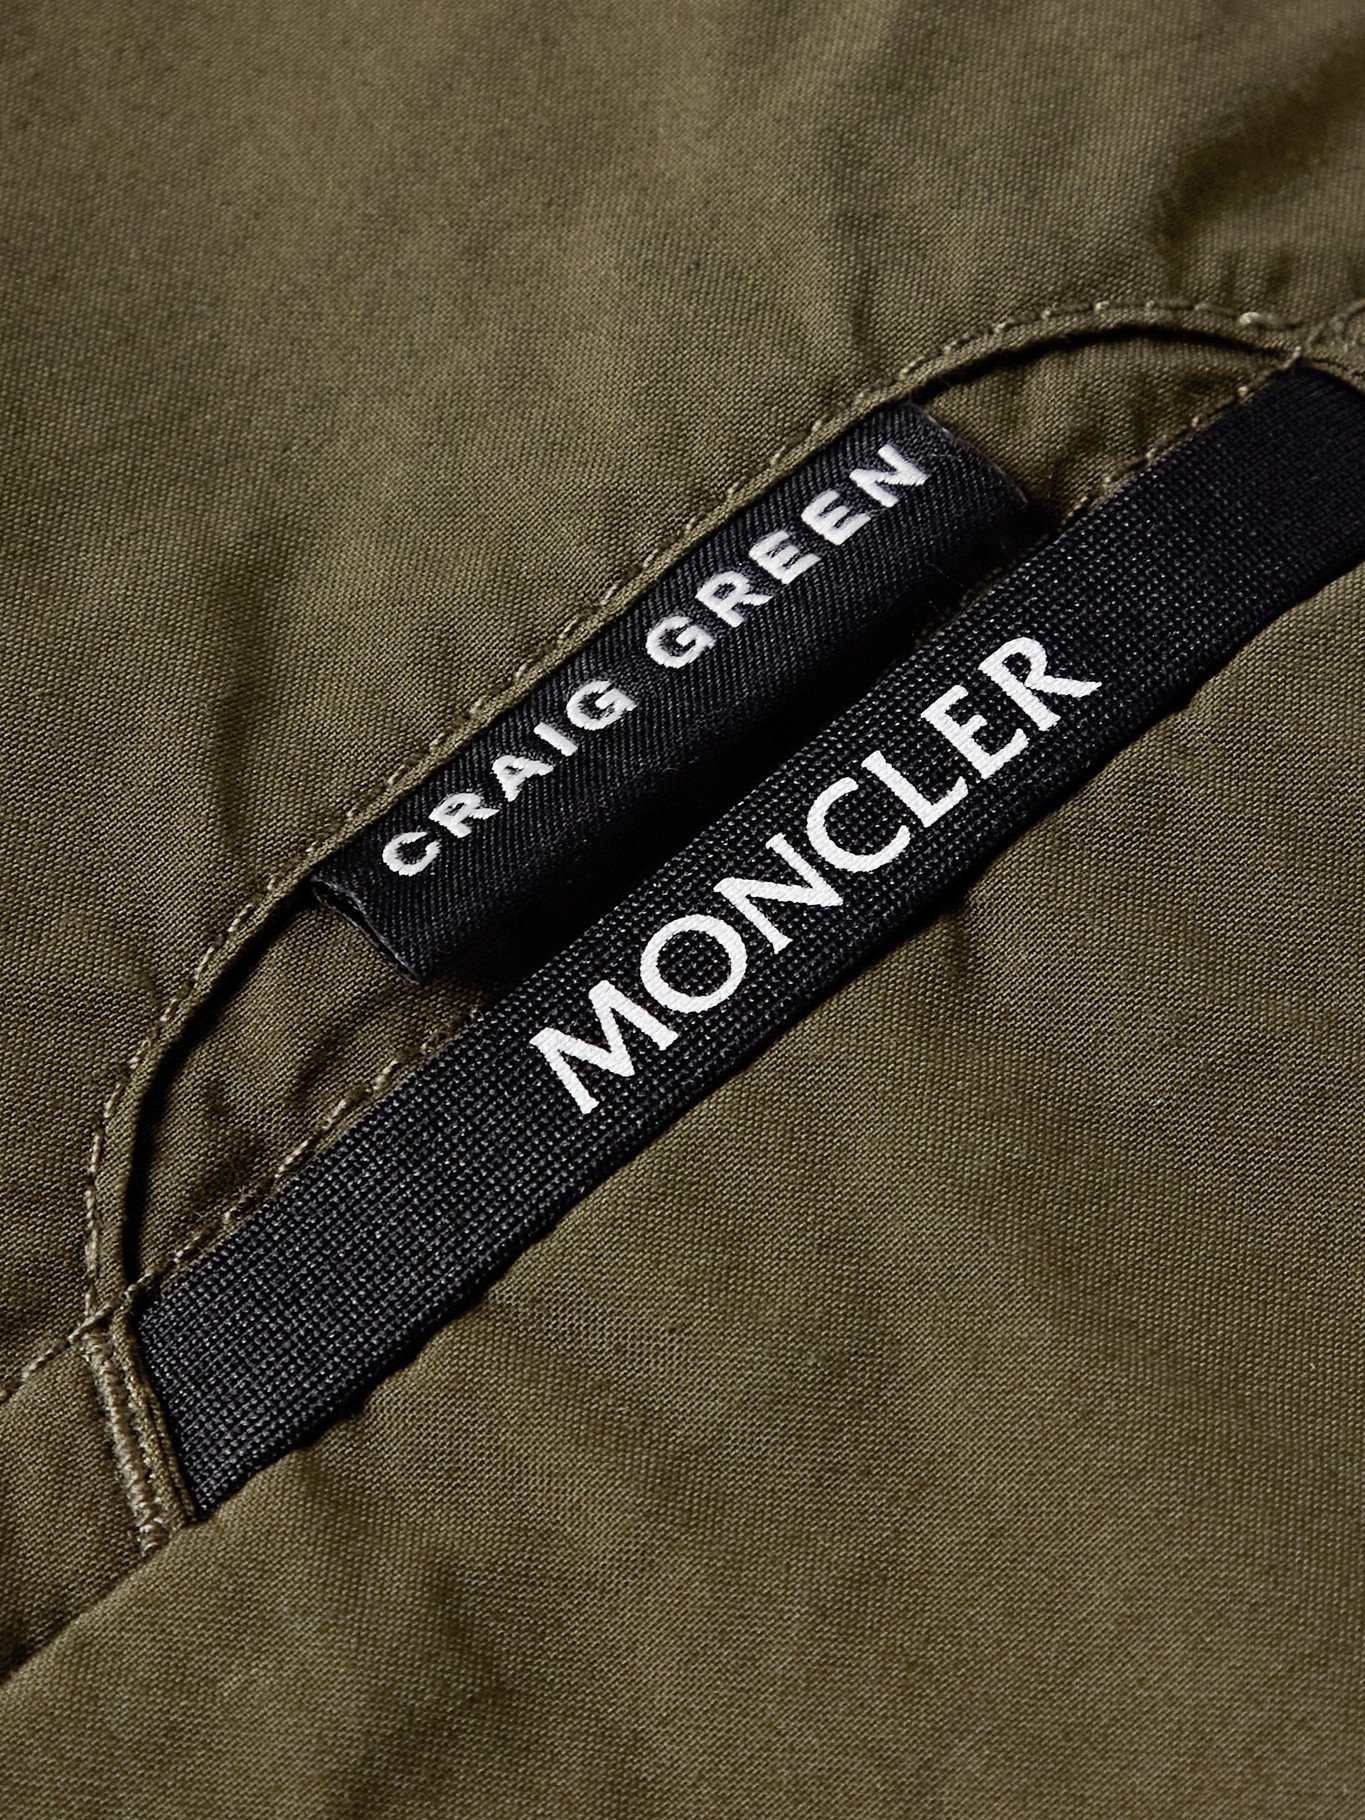 MONCLER GENIUS - 5 Moncler Craig Green Actinemys Printed Cotton